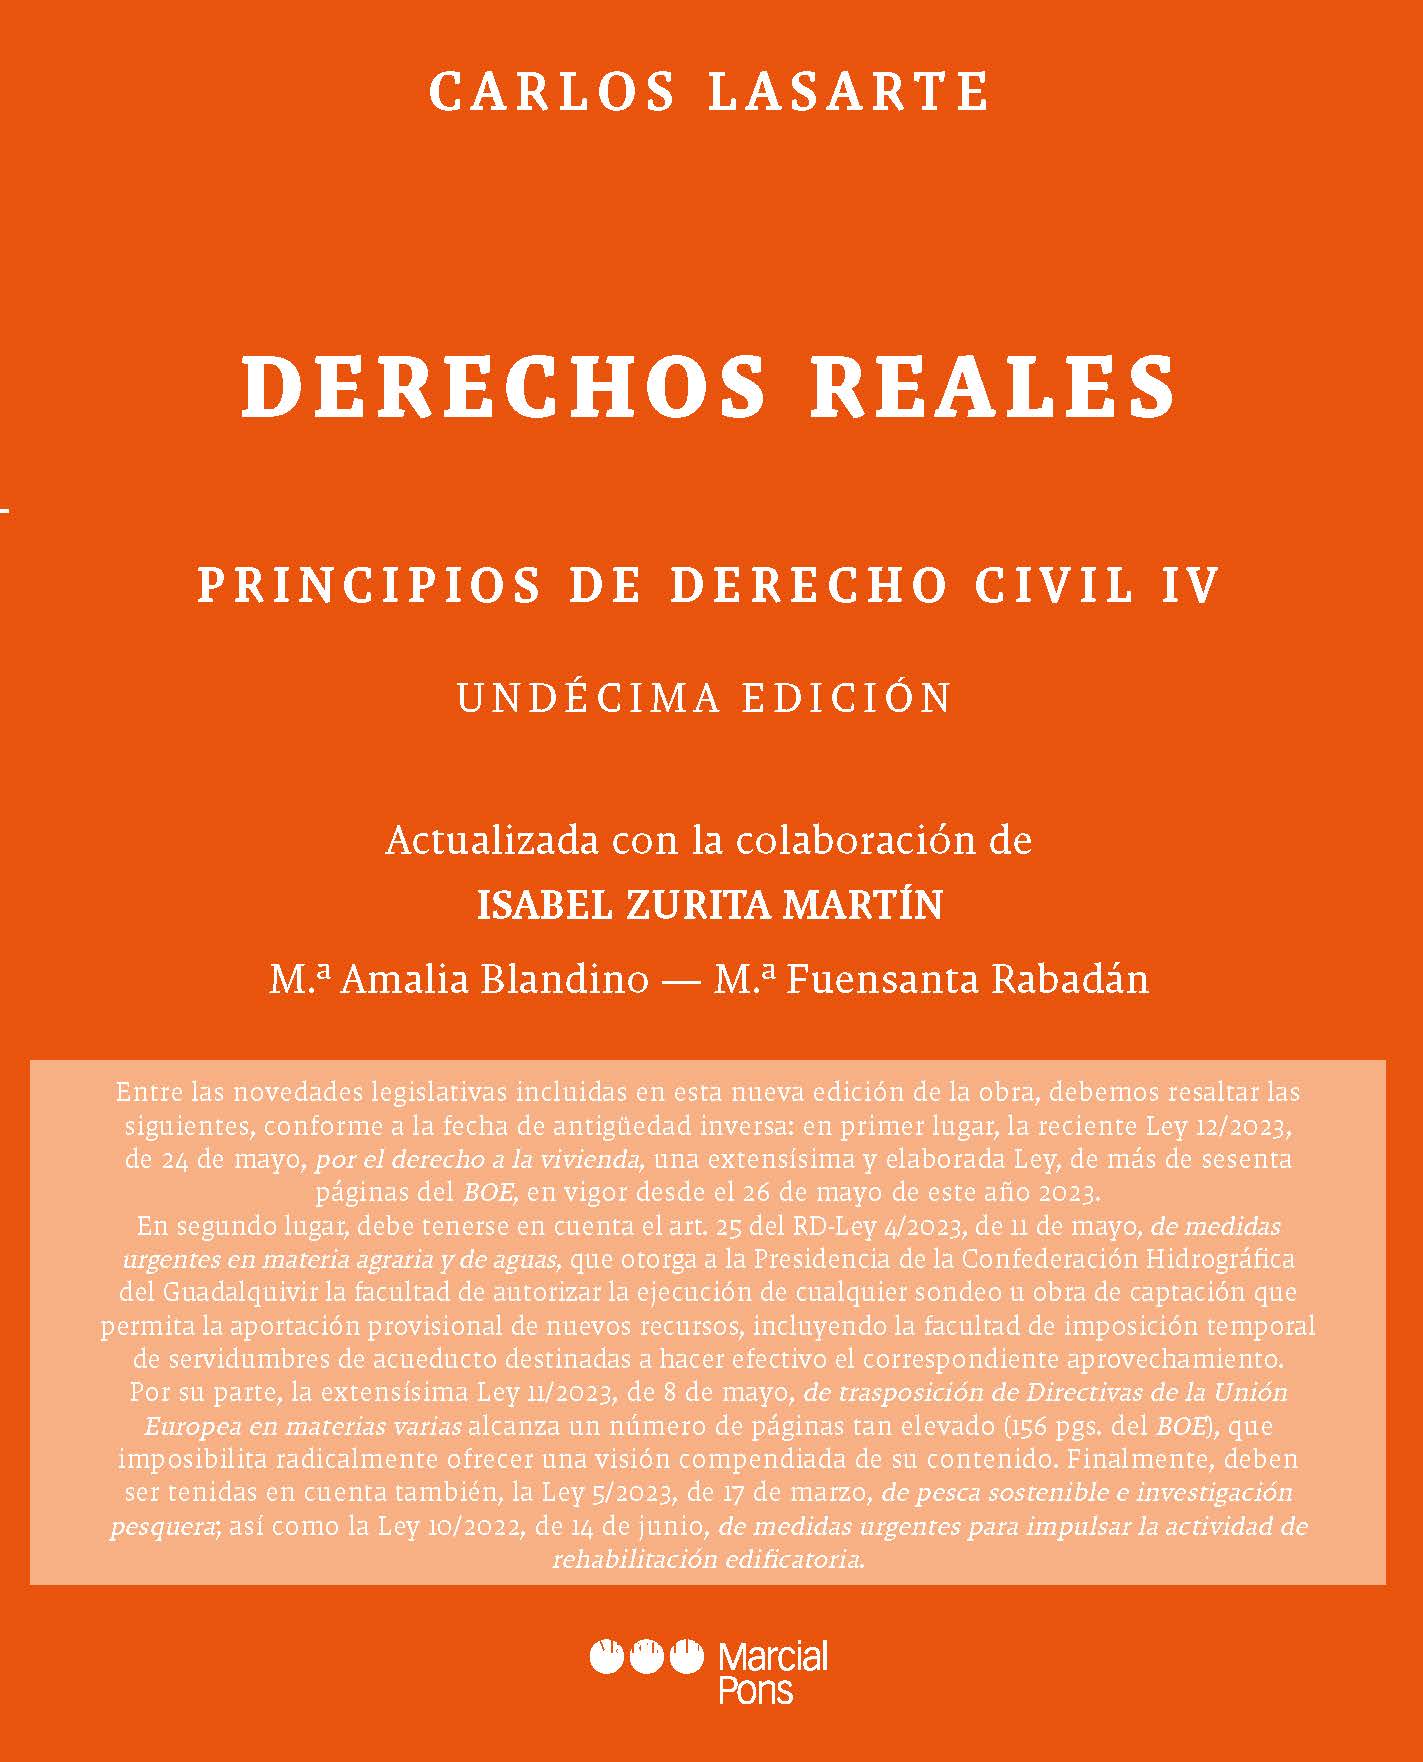 Lasarte. Principios de Derecho Civil IV. Derechos reales. Marcial Pons, 2023